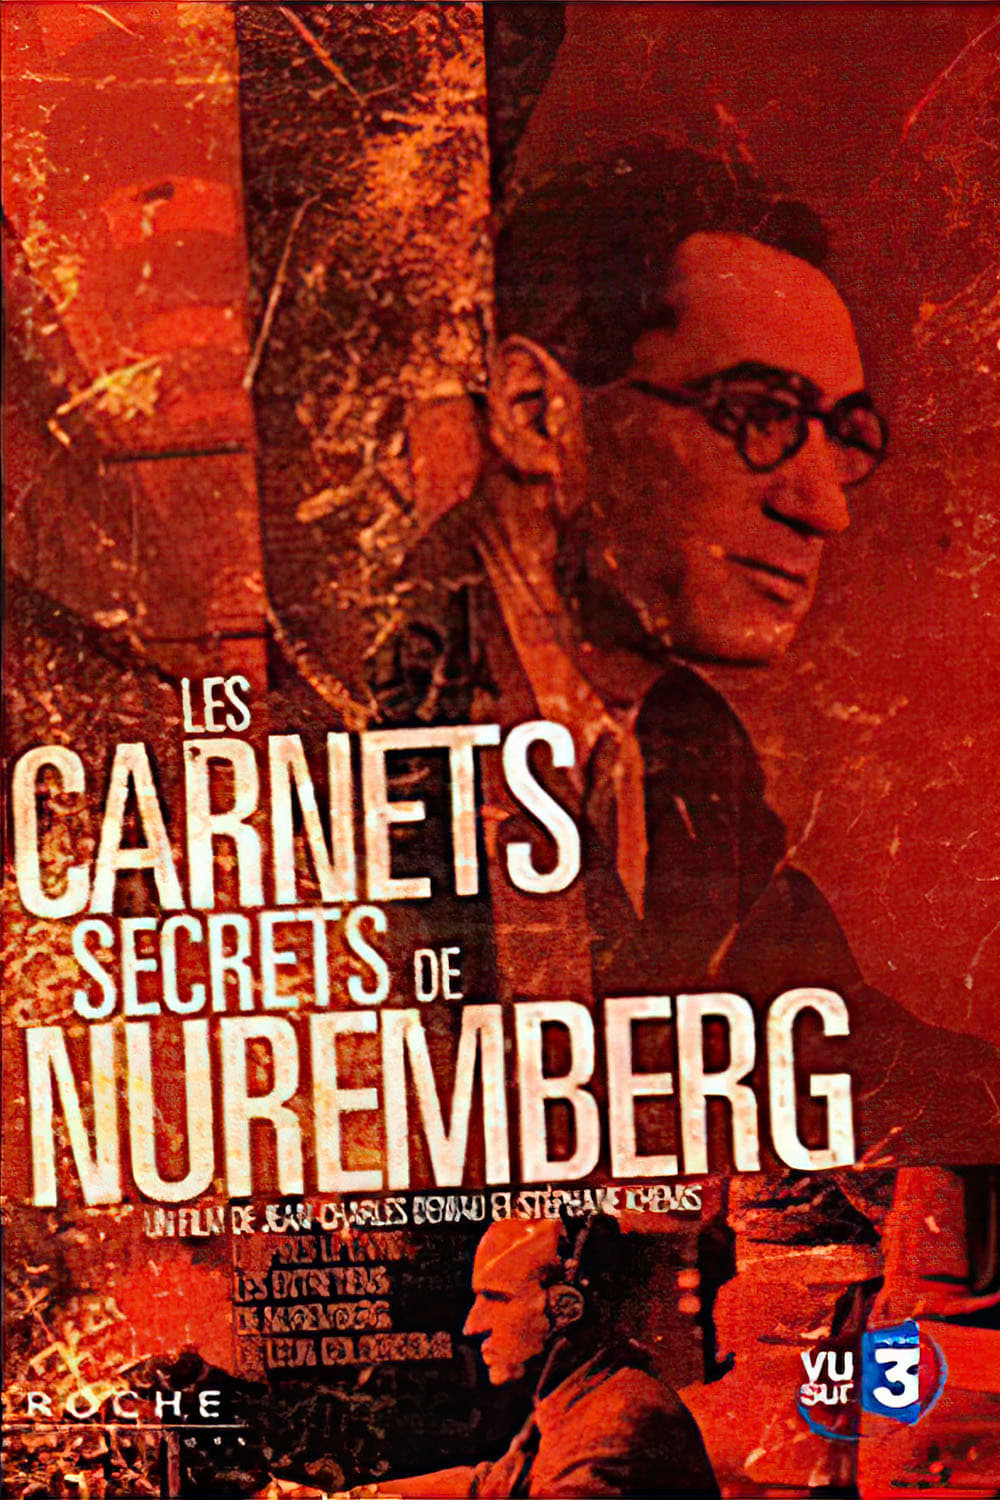 Les Carnets secrets de Nuremberg